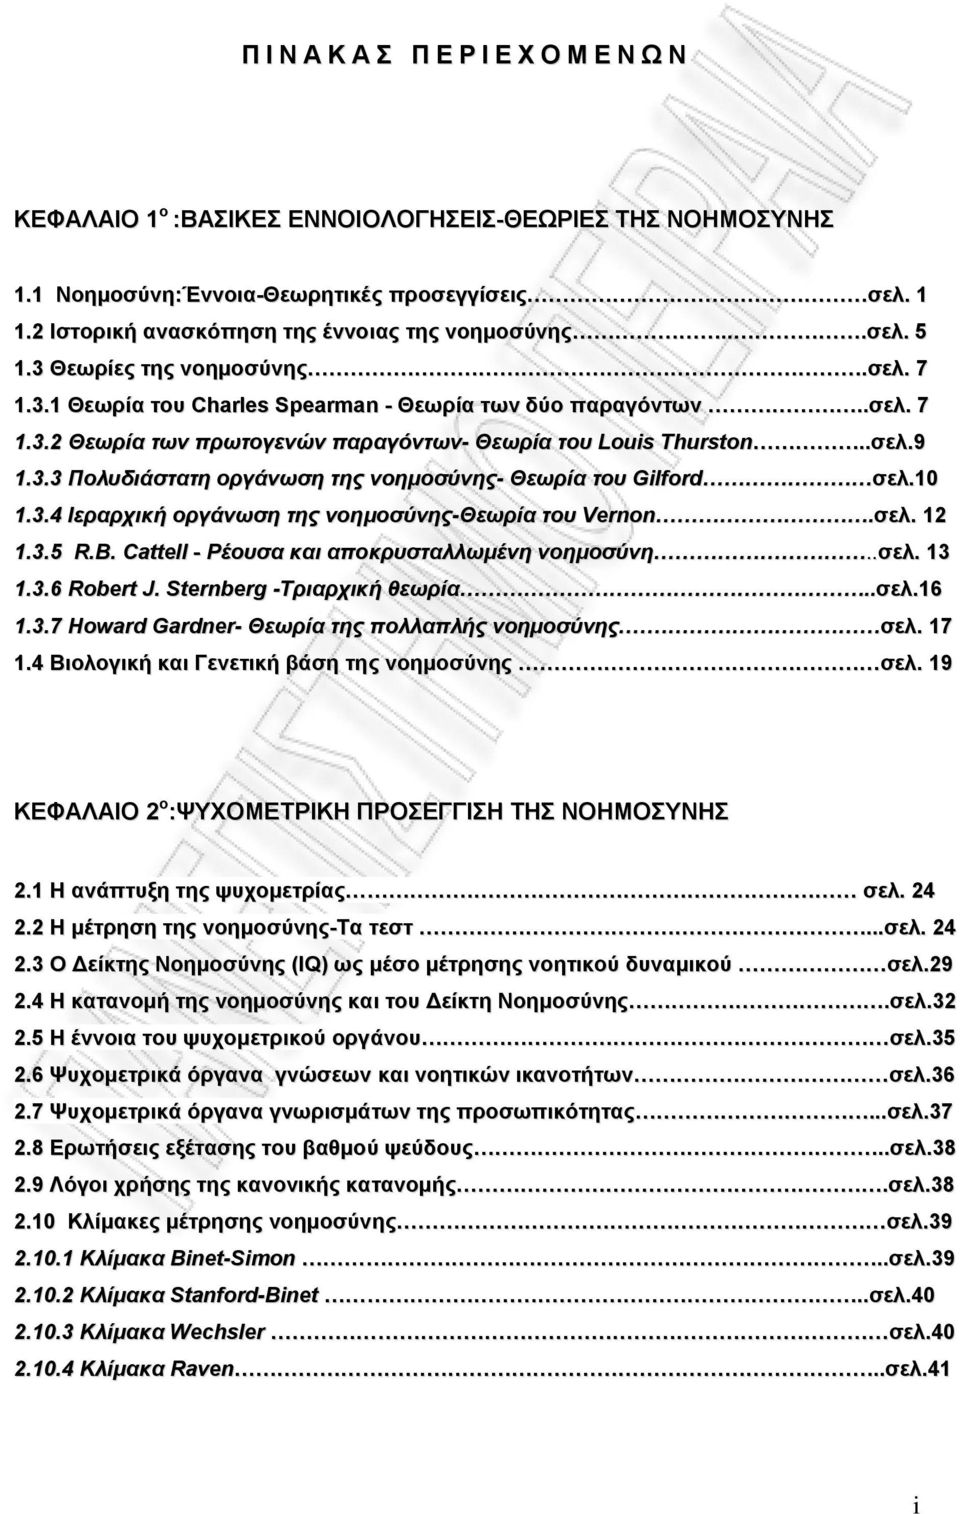 .σελ.9 1.3.3 Πολυδιάστατη οργάνωση της νοημοσύνης- Θεωρία του Gilford σελ.10 1.3.4 Ιεραρχική οργάνωση της νοημοσύνης-θεωρία του Vernon.σελ. 12 1.3.5 R.B.